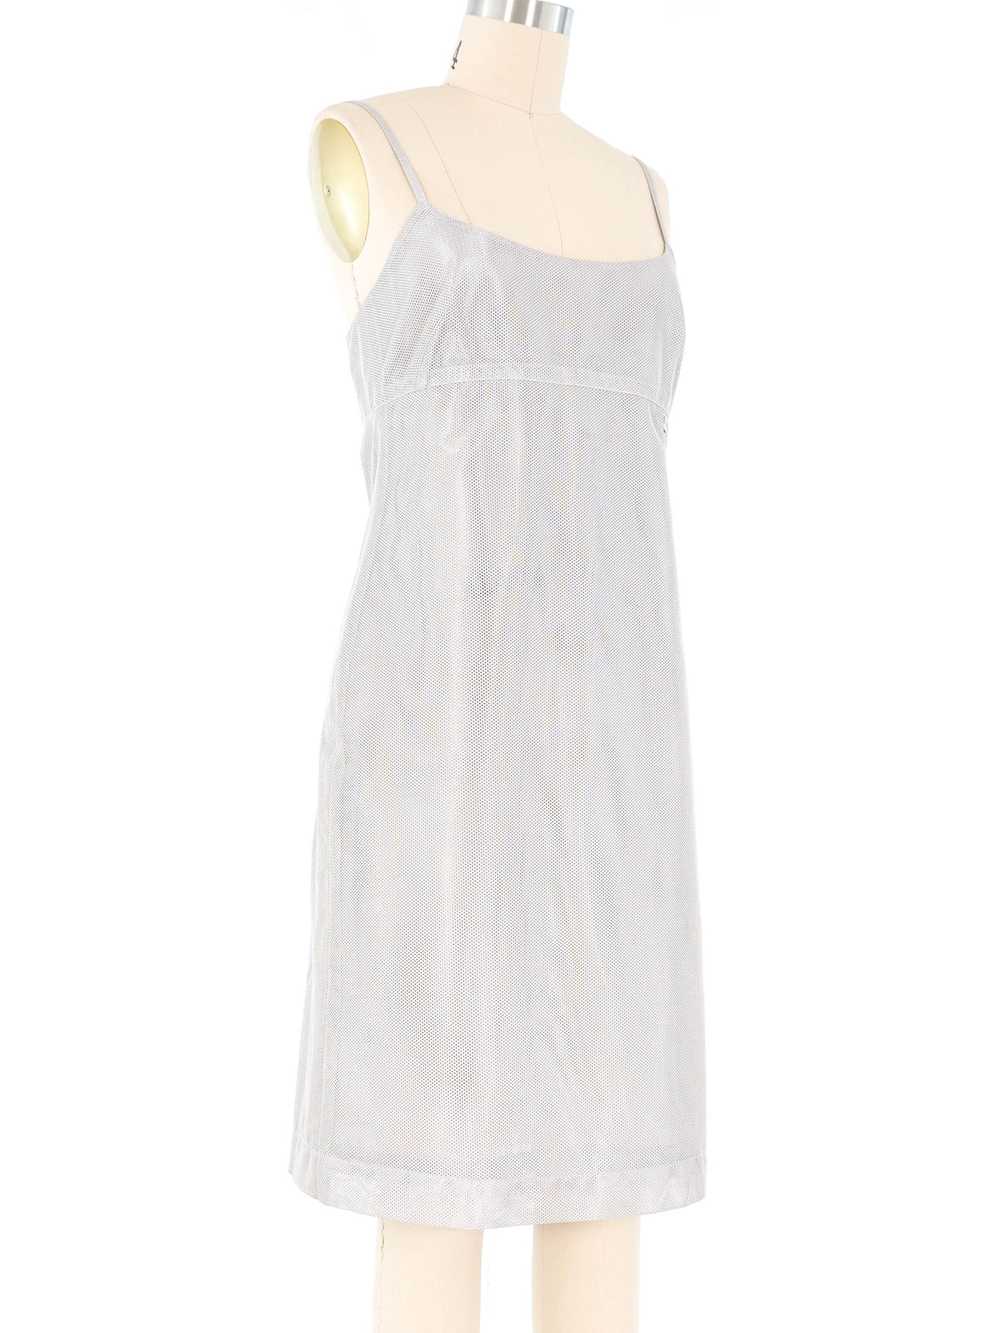 Chanel Silver Mesh Tank Dress - image 3